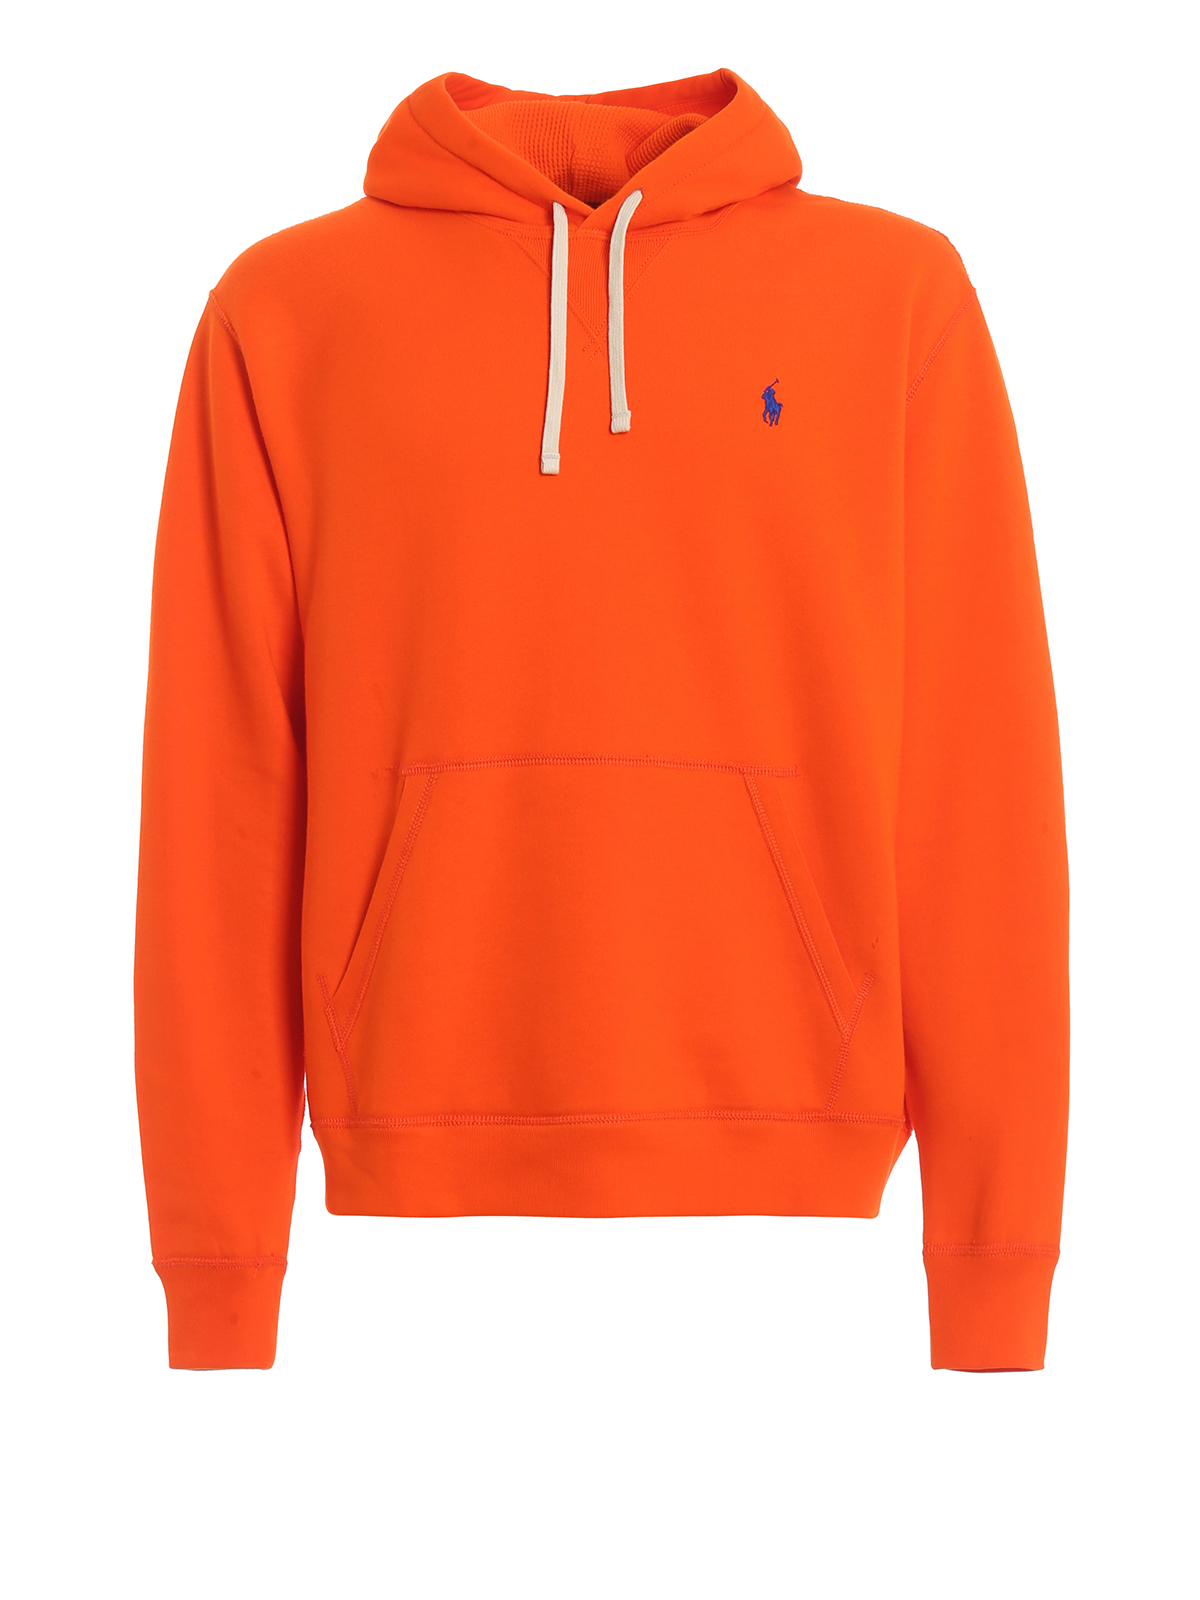 ralph lauren orange sweater